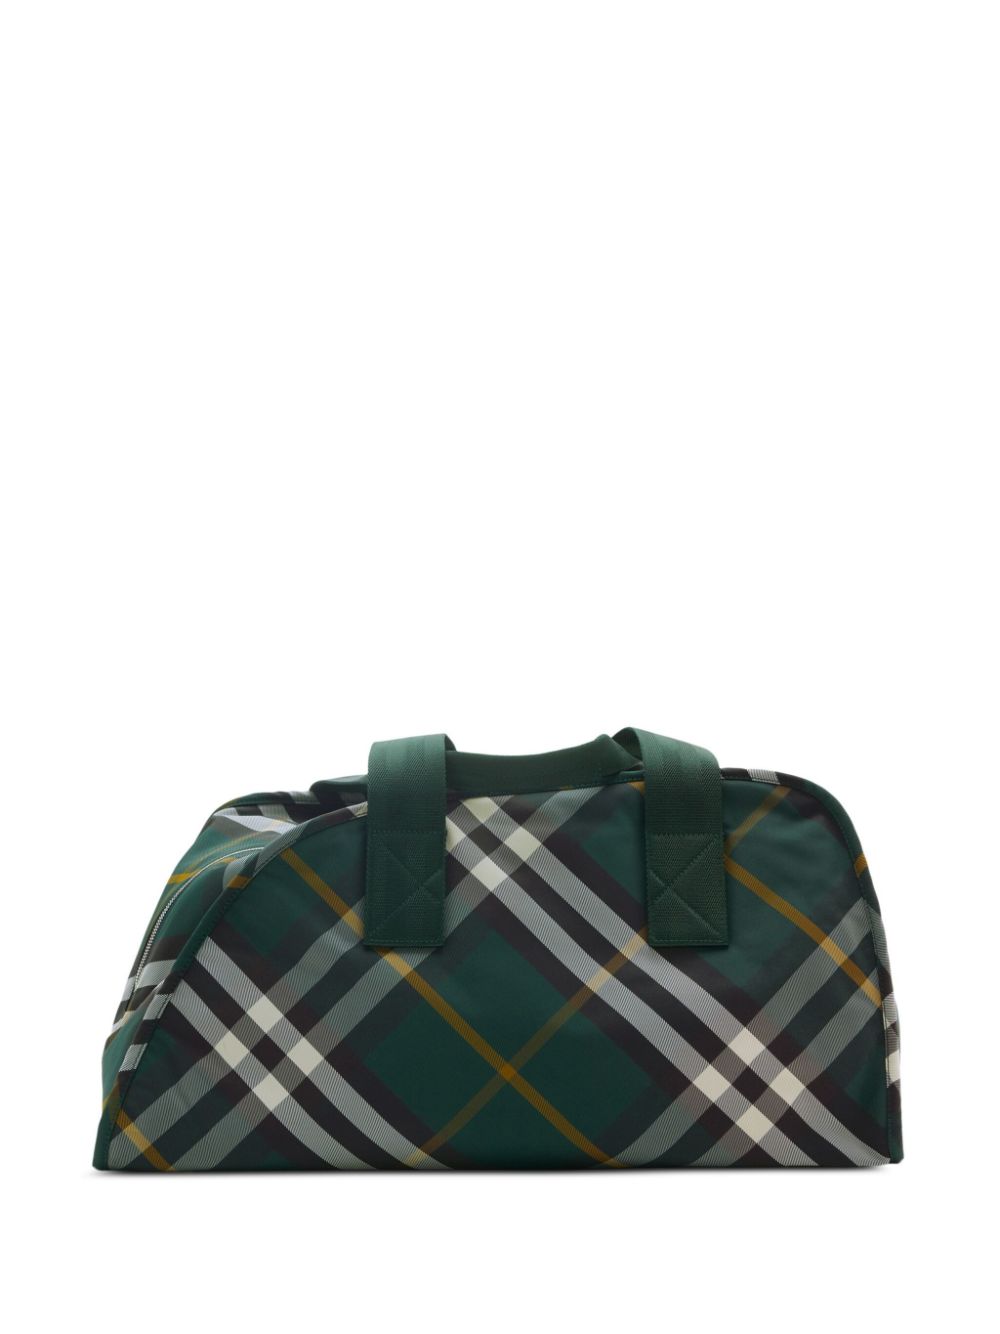 Burberry Mittelgroße Shield Reisetasche mit Check - Grün